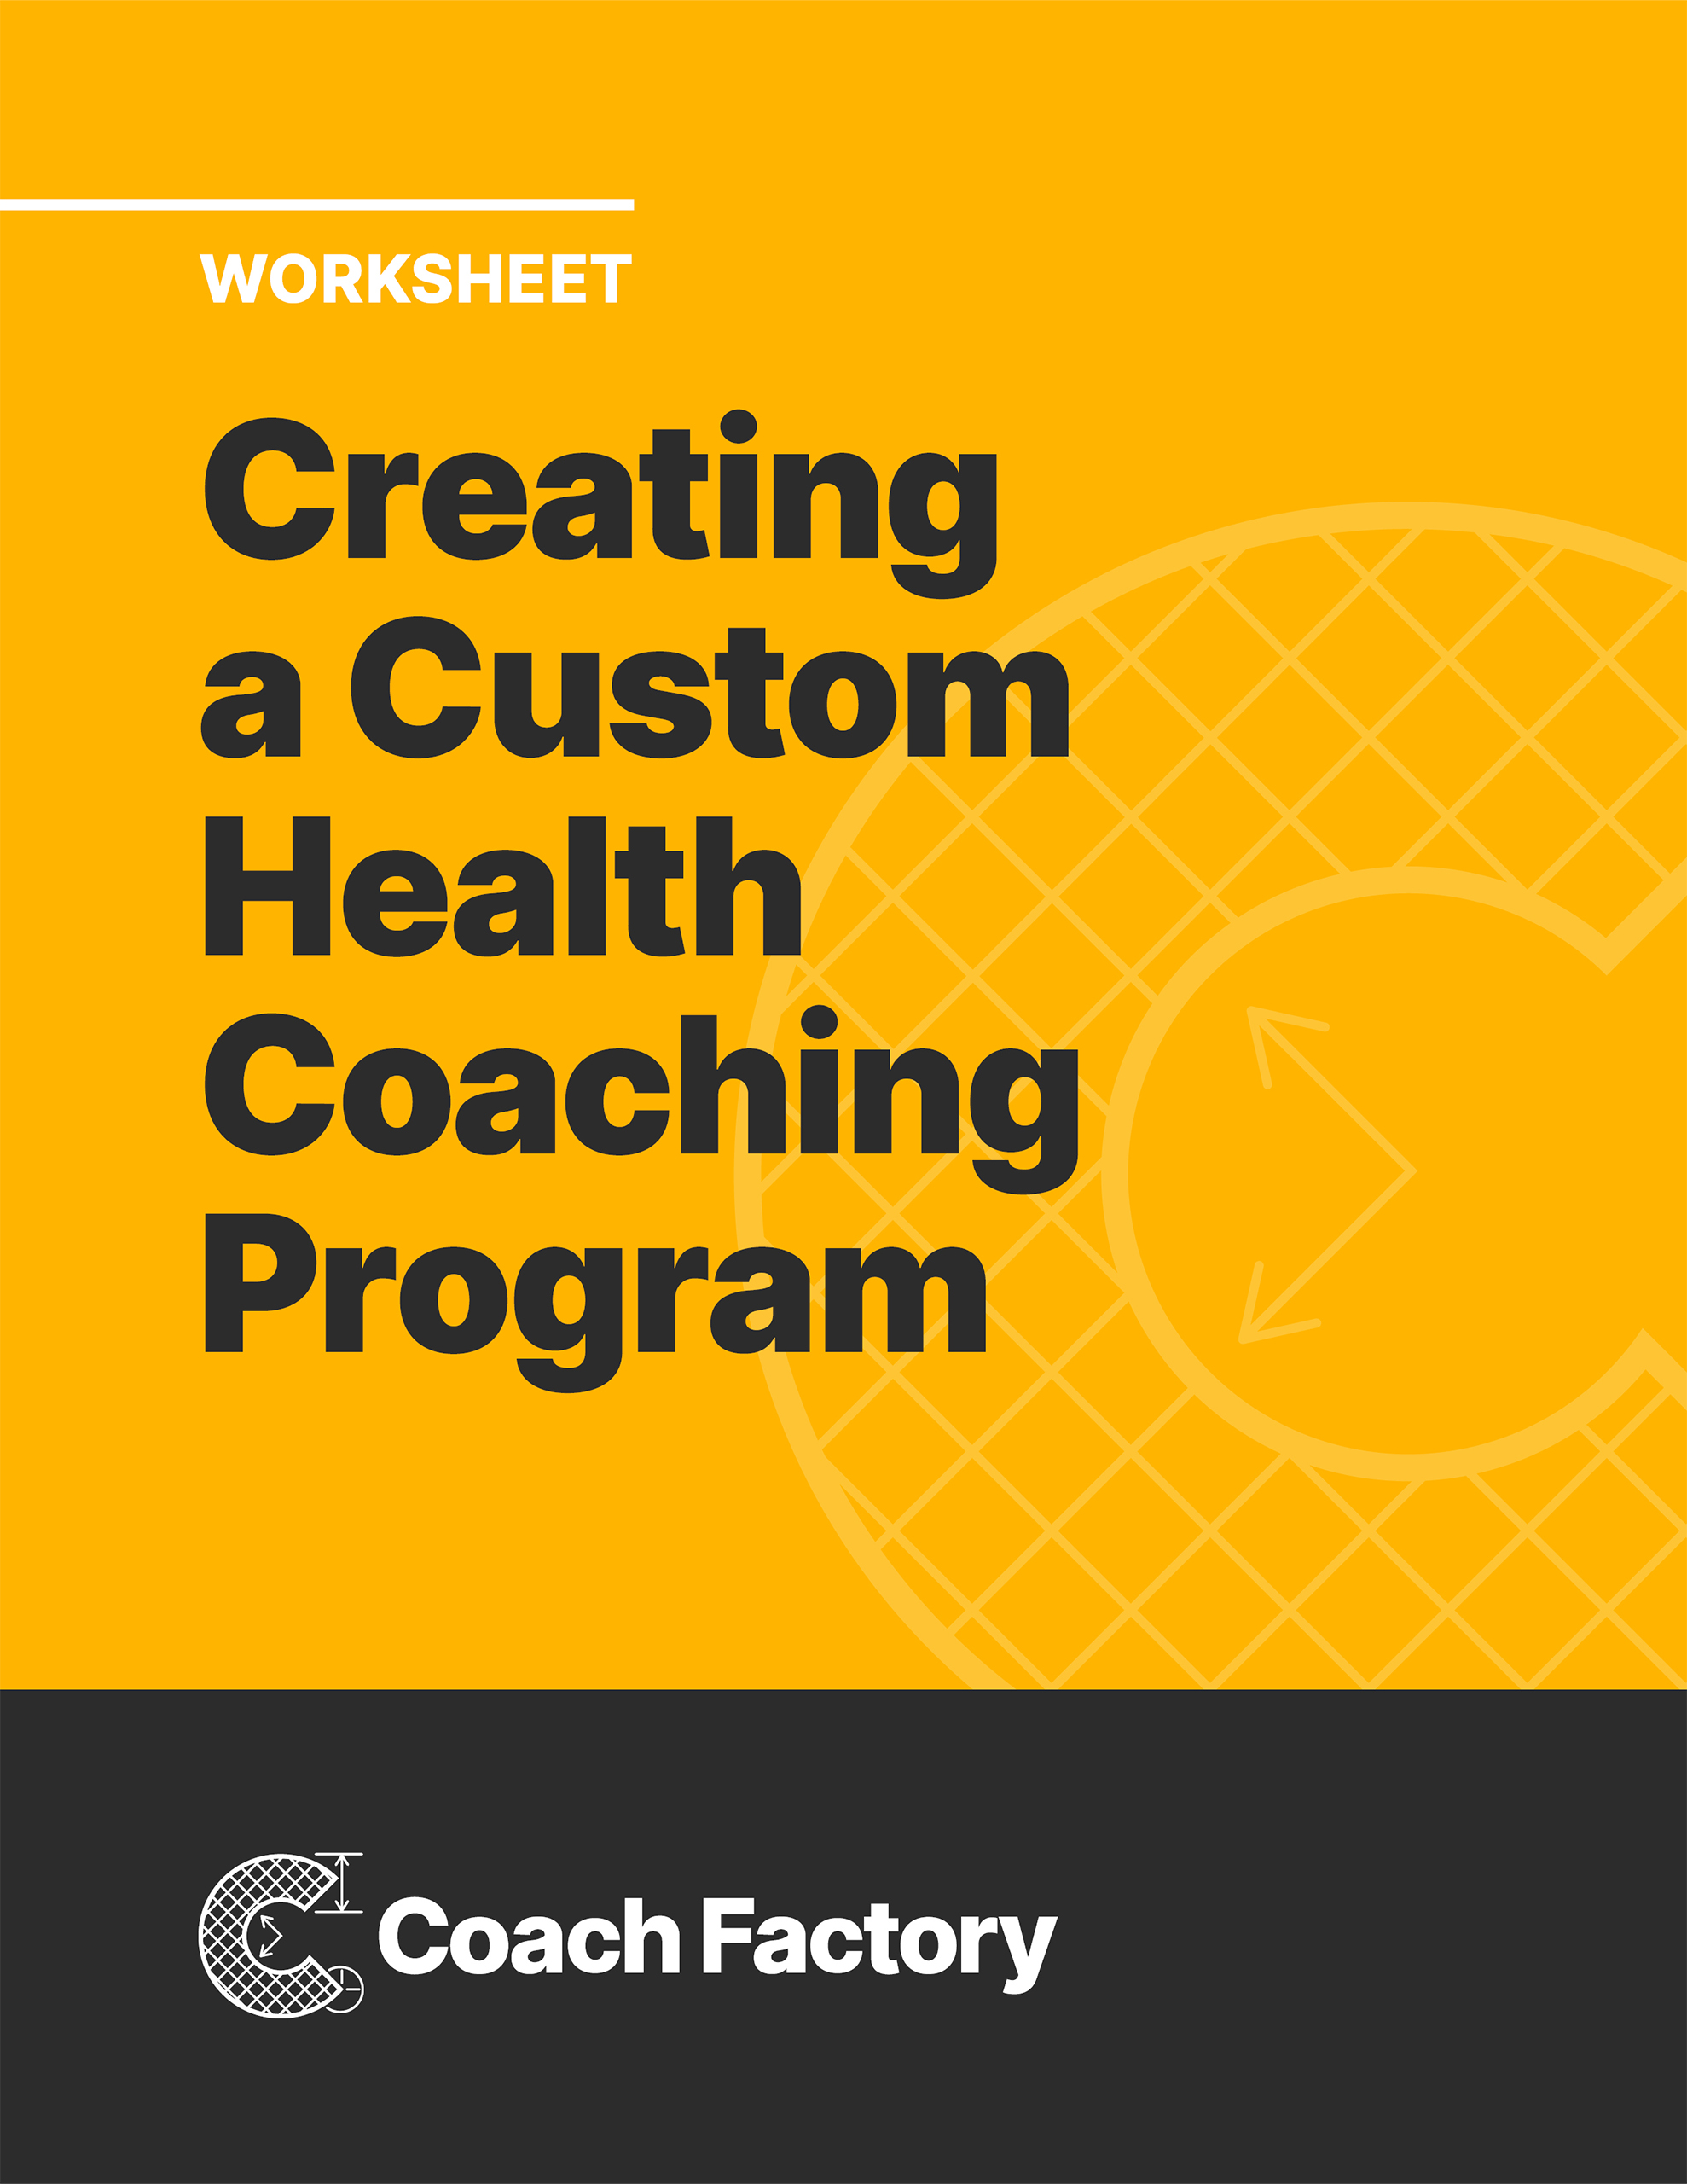 Worksheet Creating a Custom Health Coaching Program